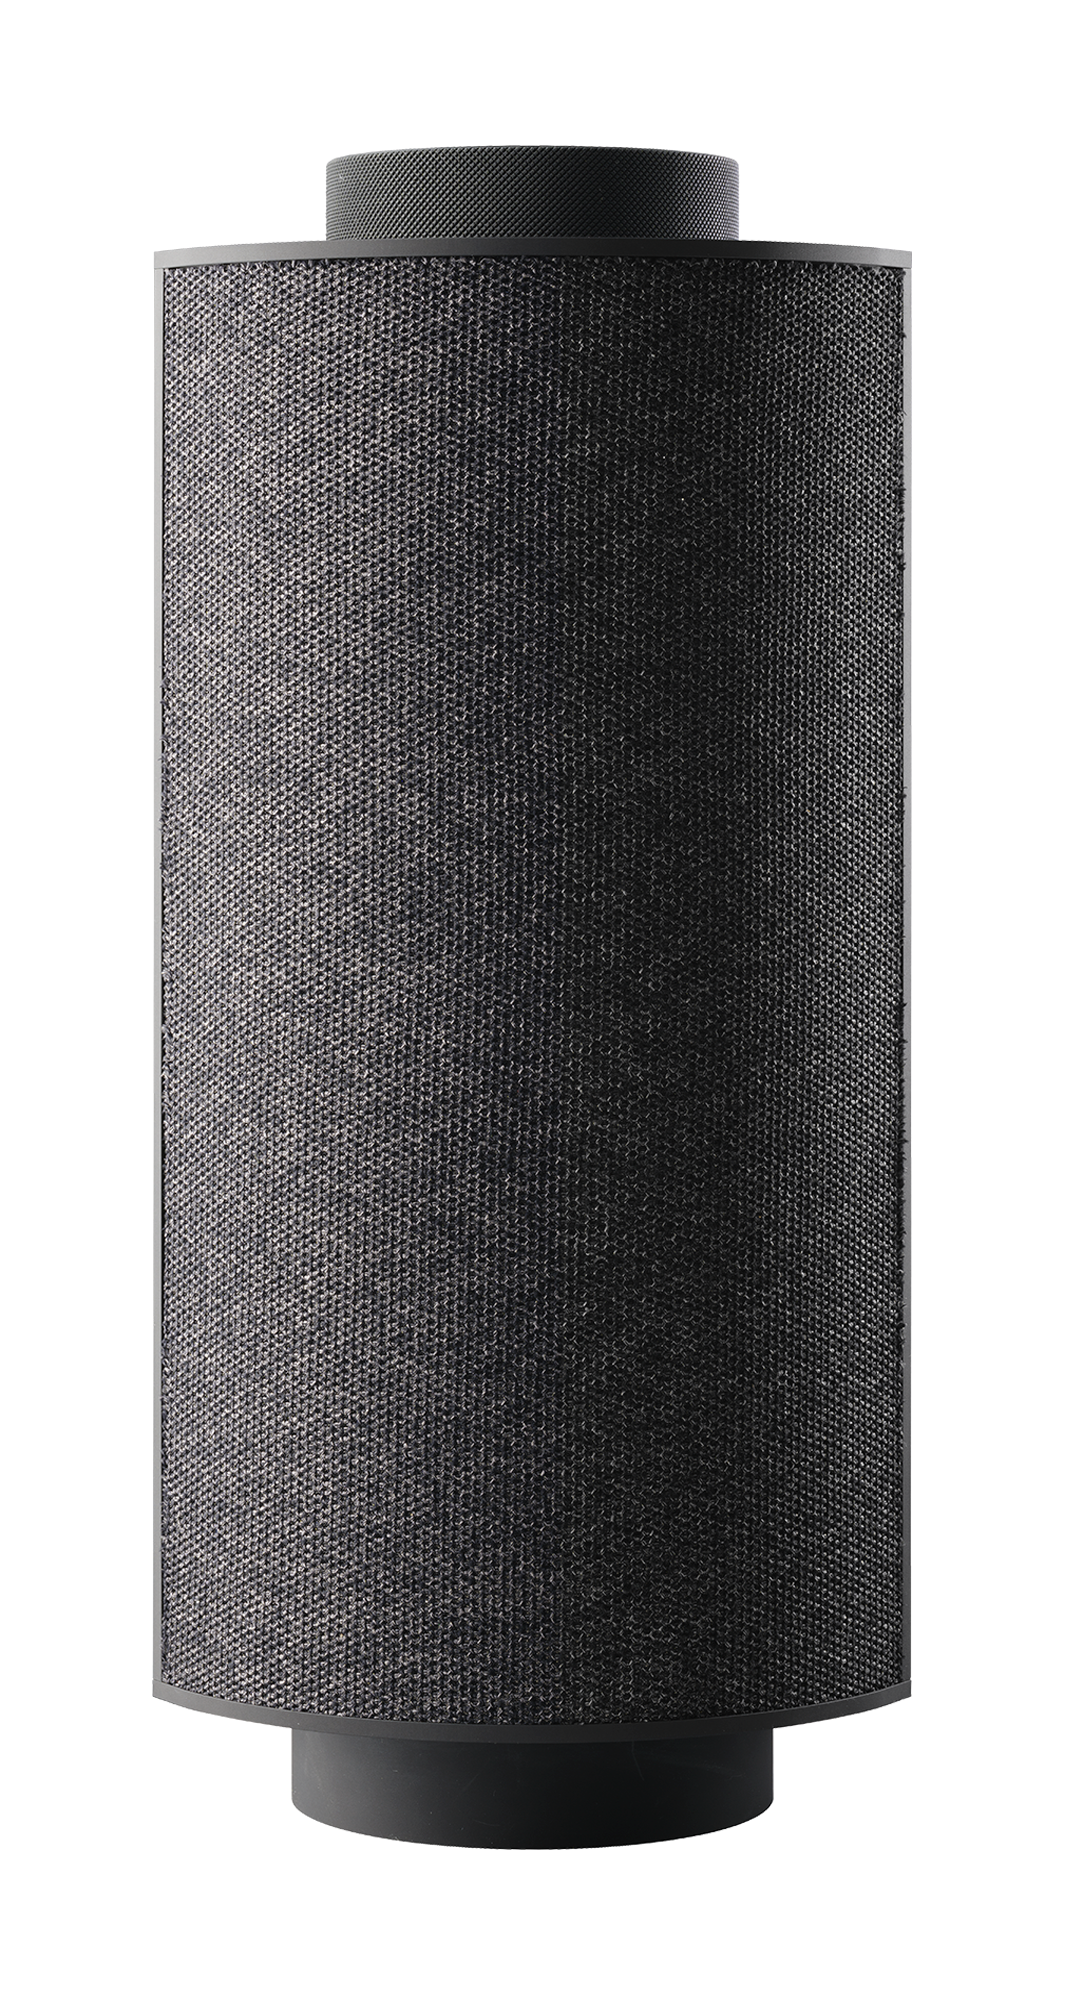 Pulp speakers in black color